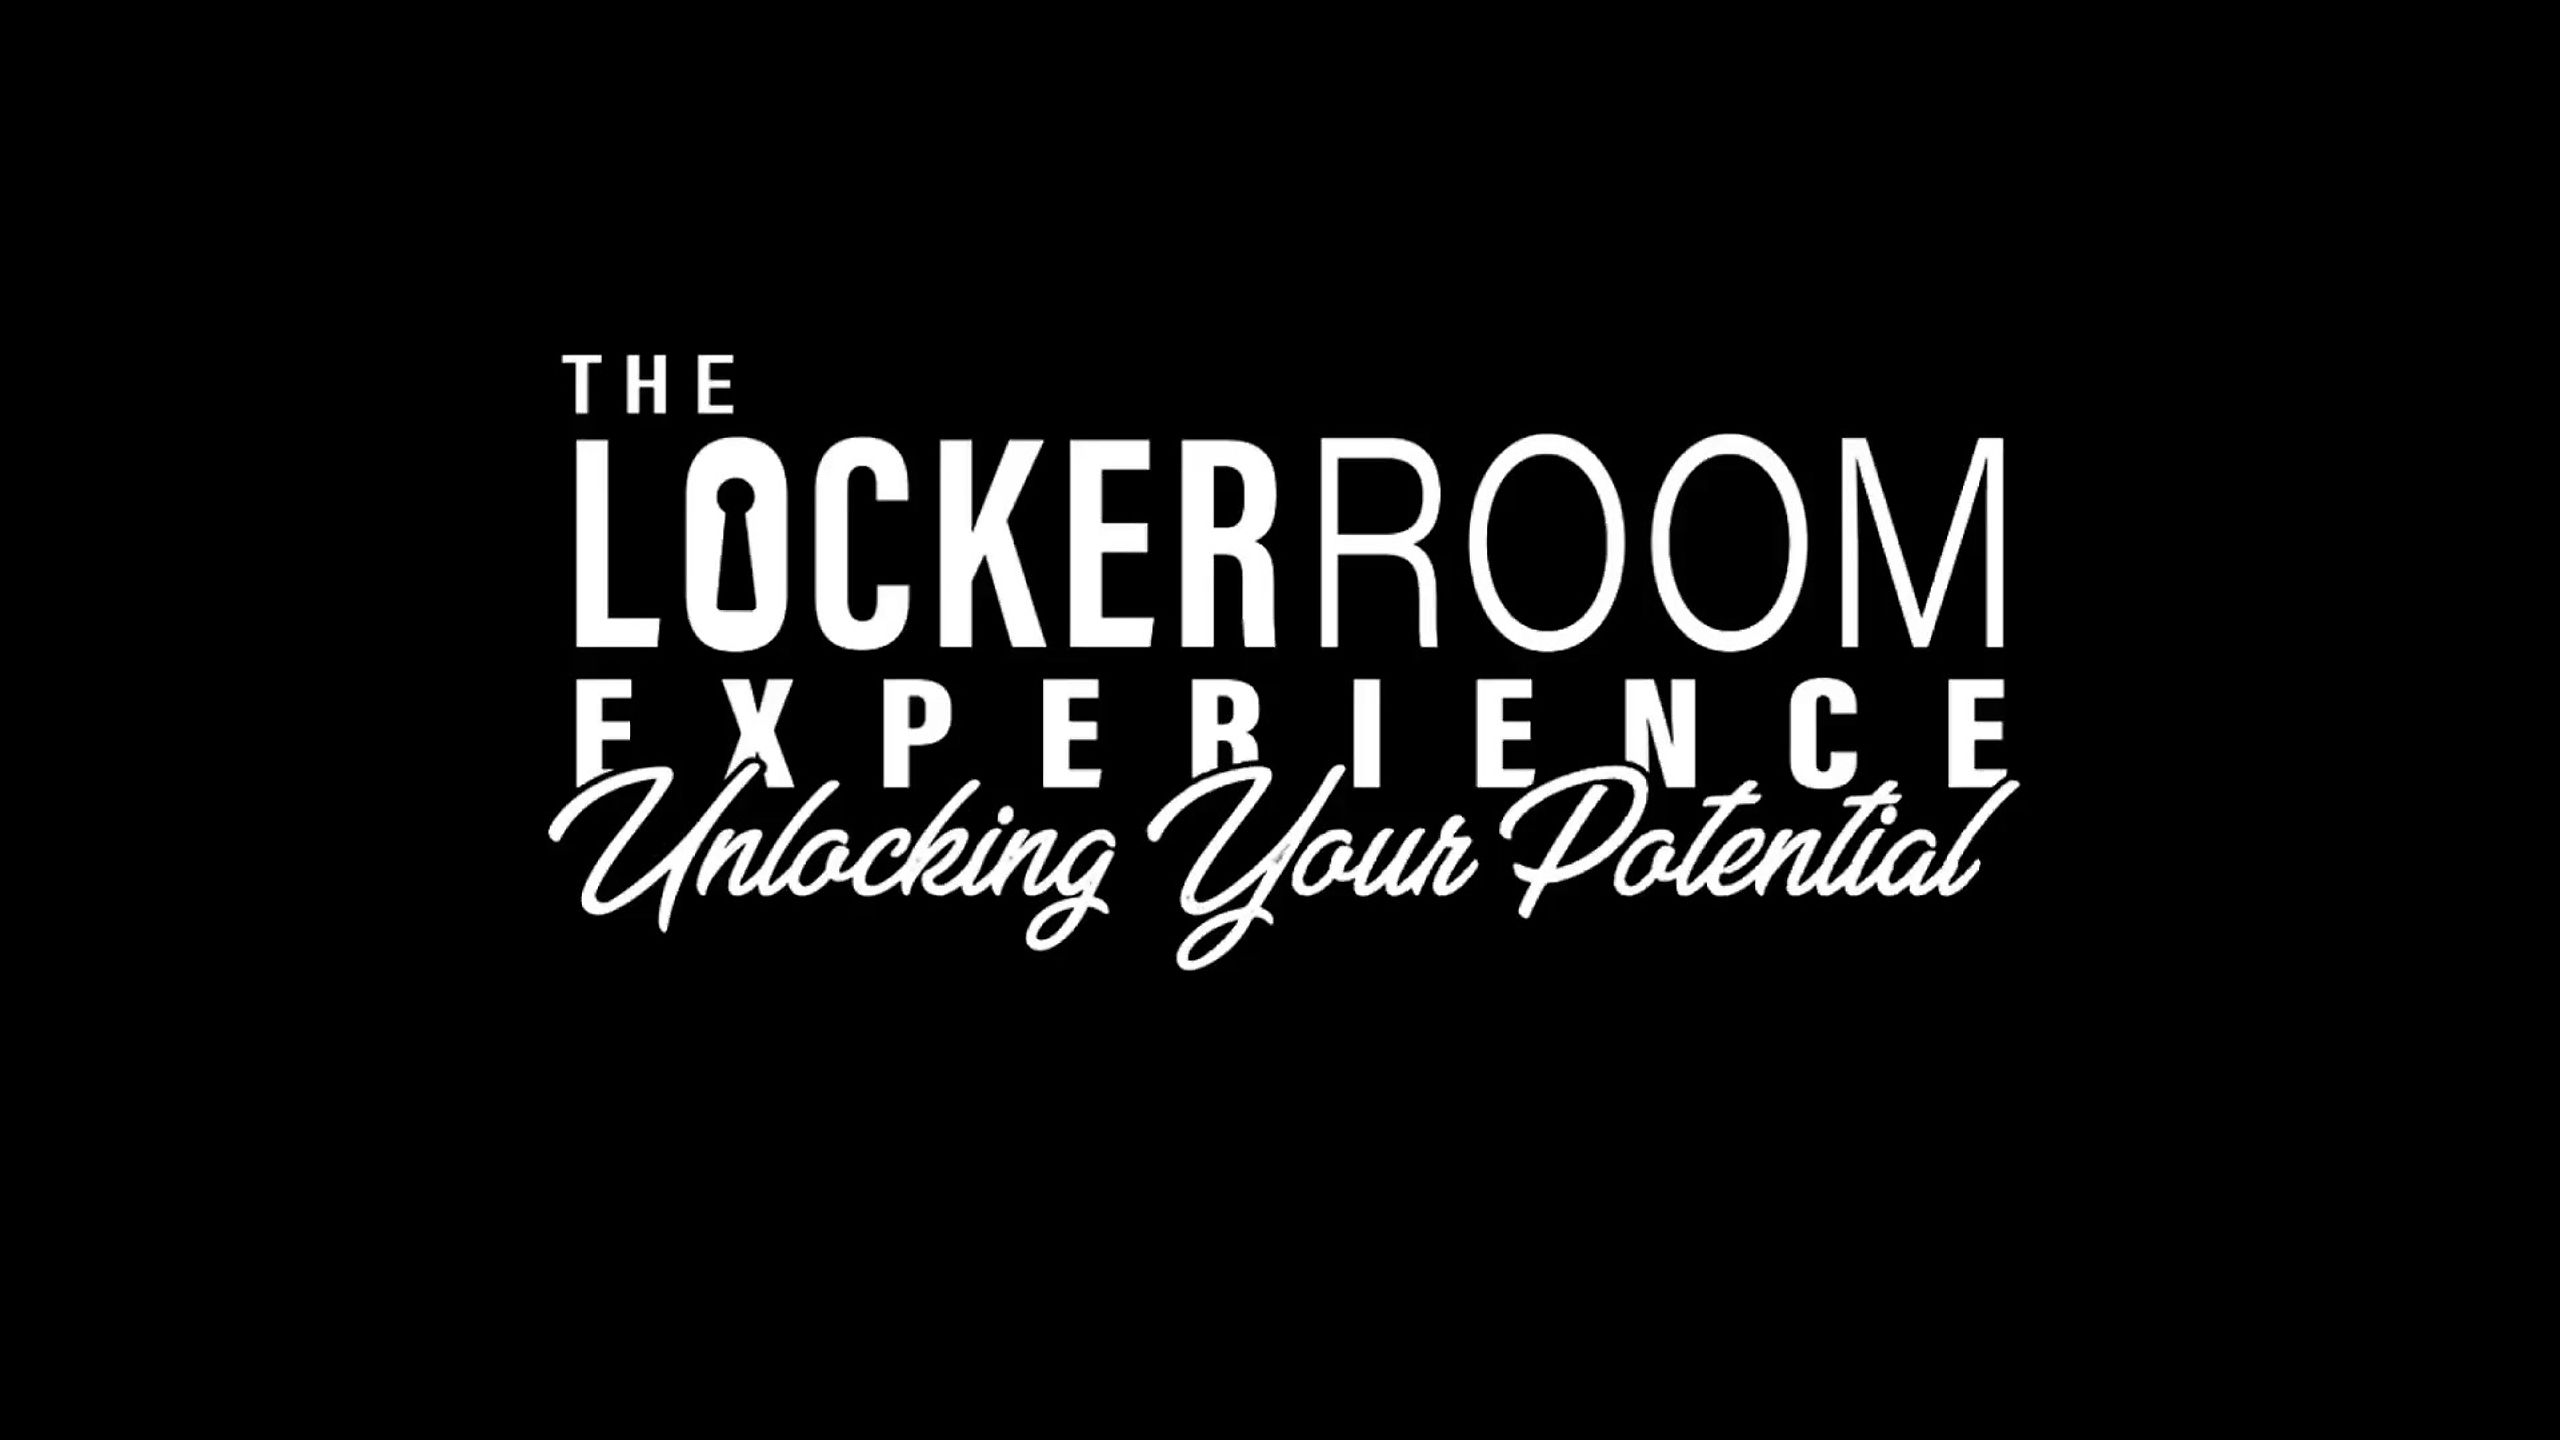 The Locker Room Experience